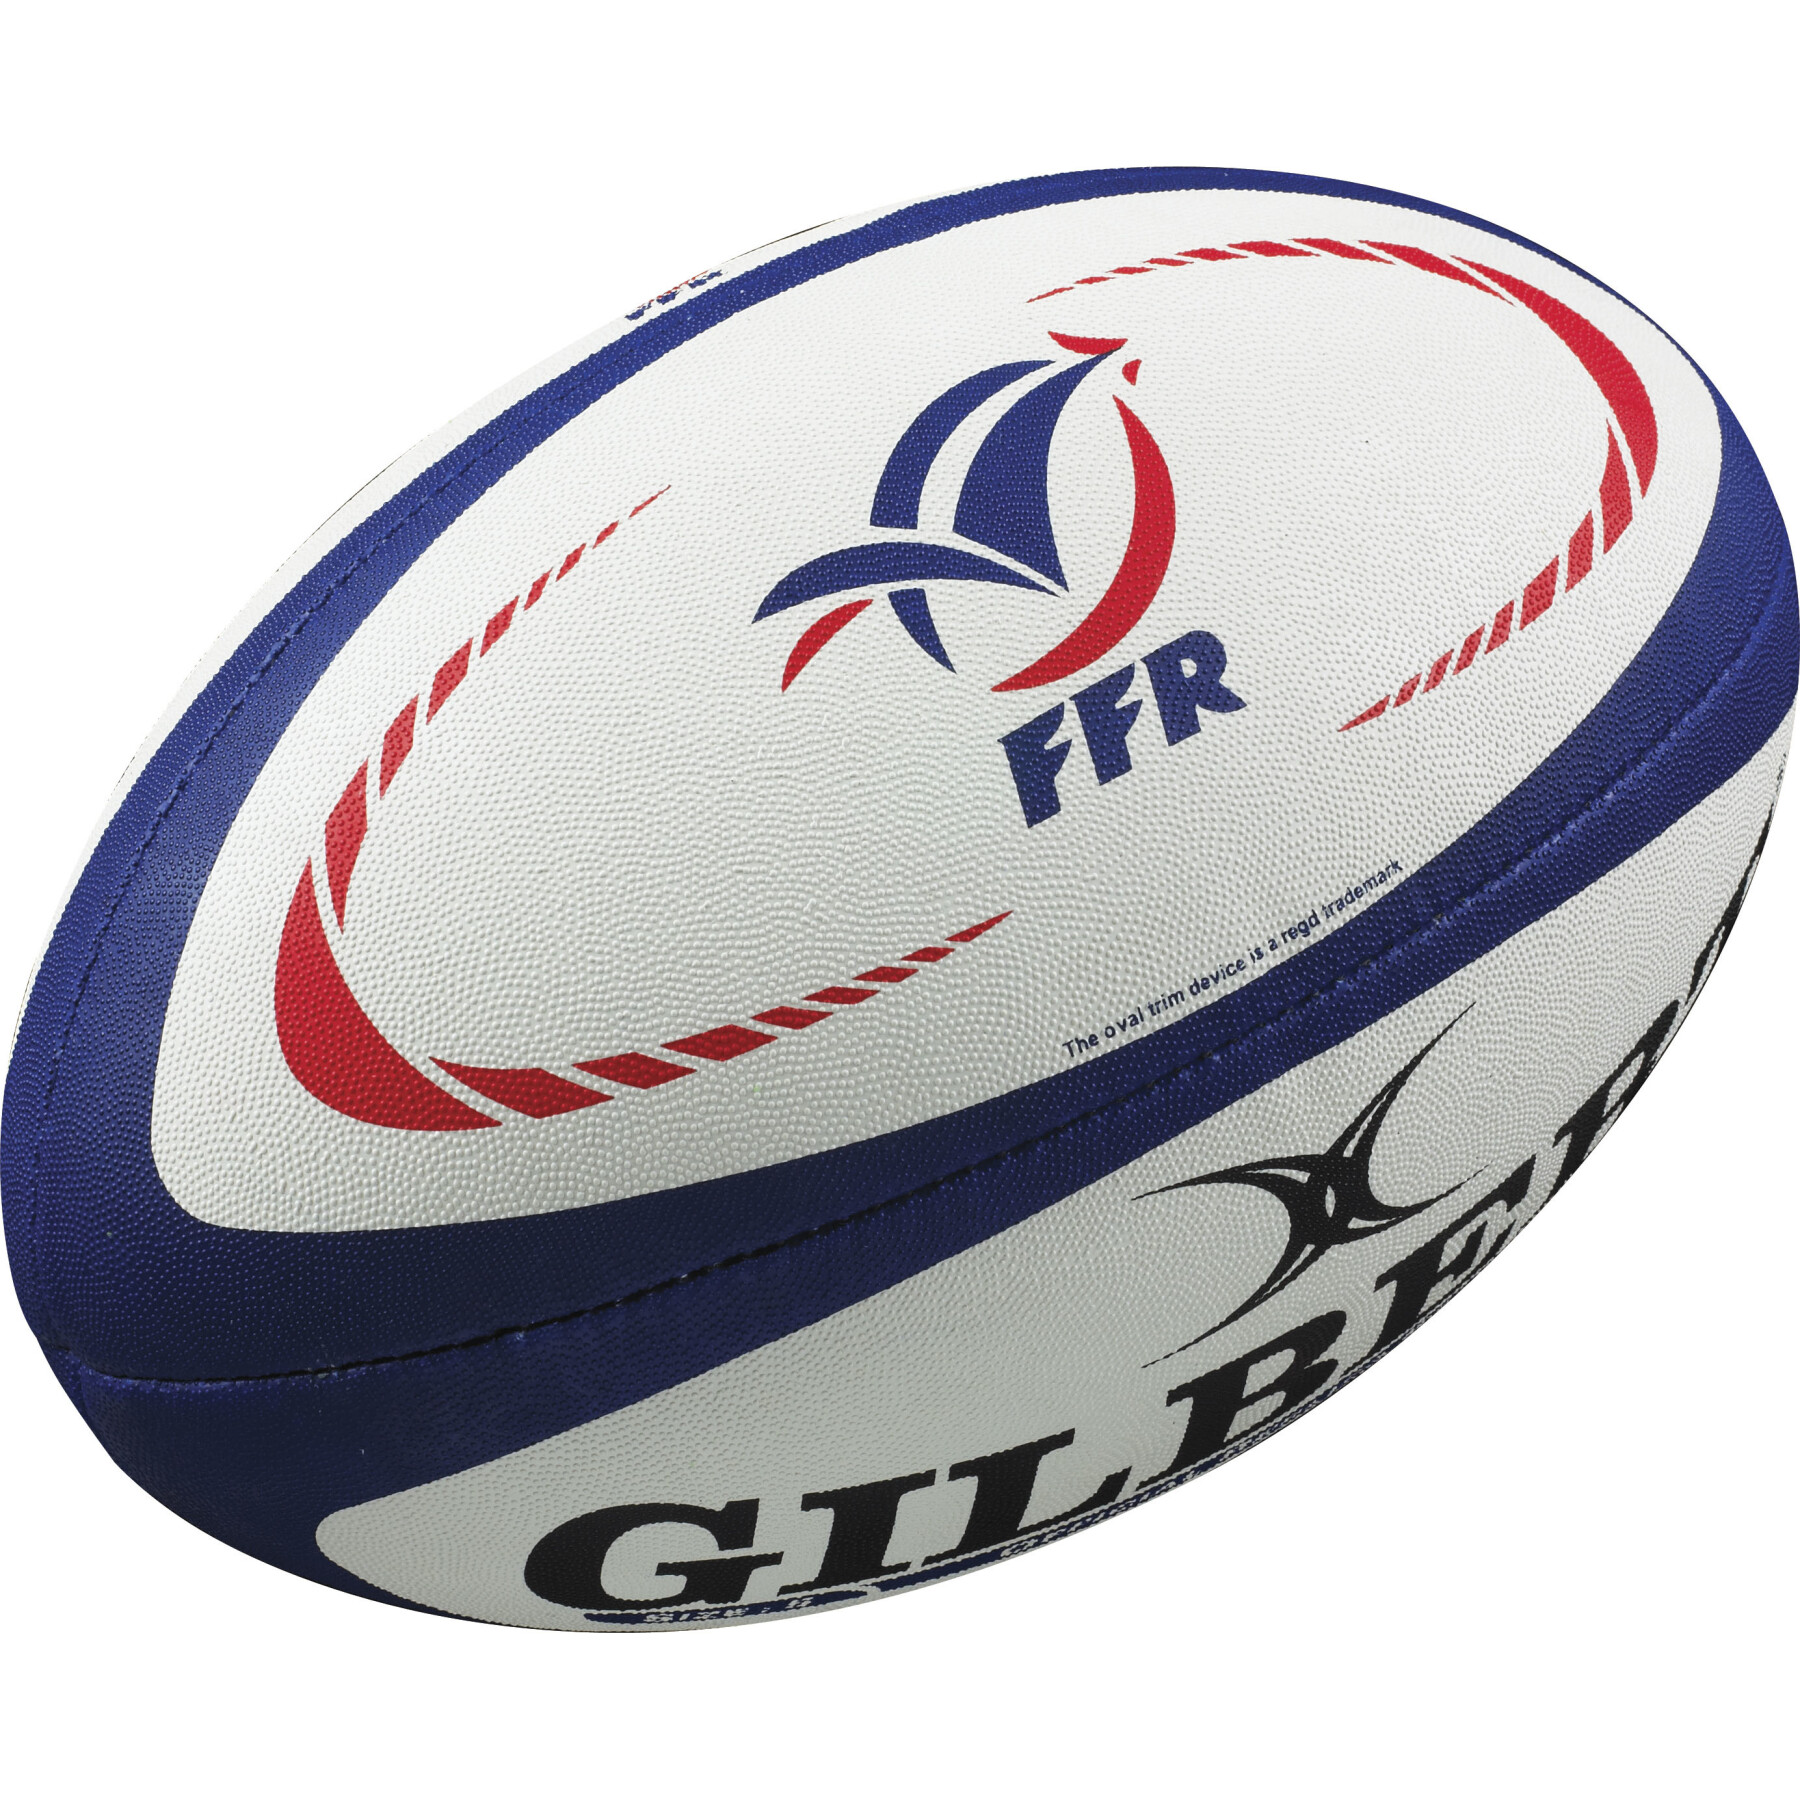 Rugbyball replica Gilbert France (Größe 5)